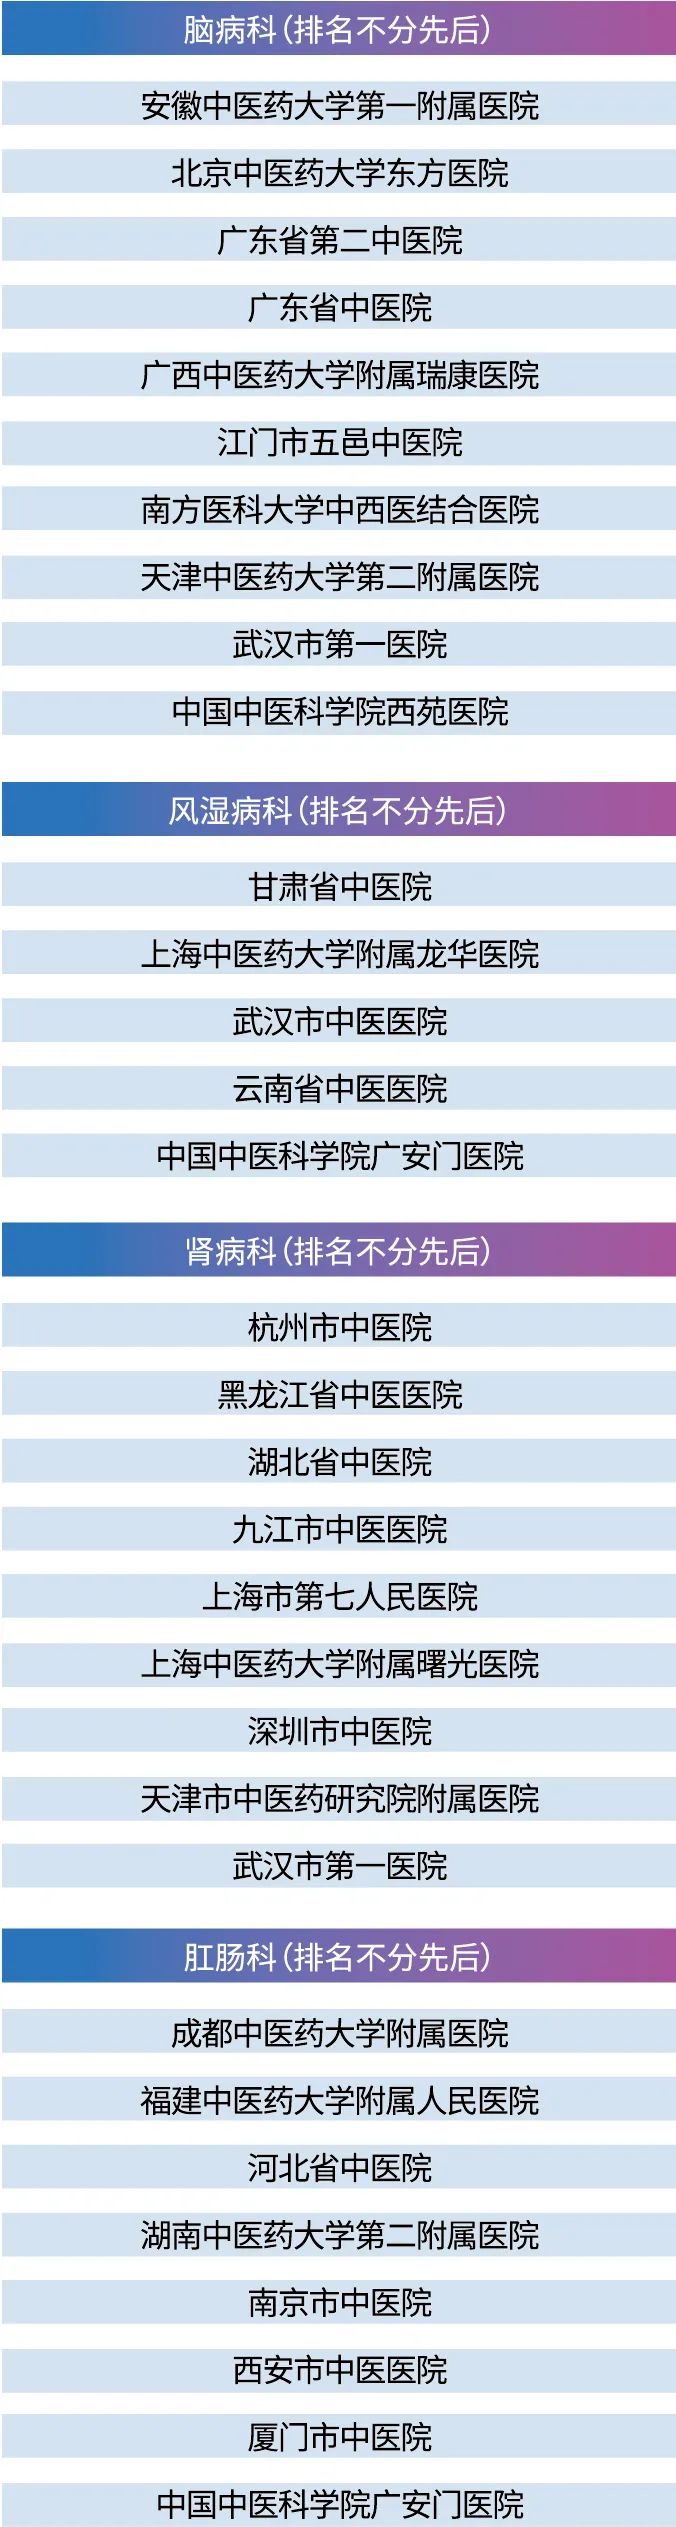 2020年中国中医医院最佳专科排行榜